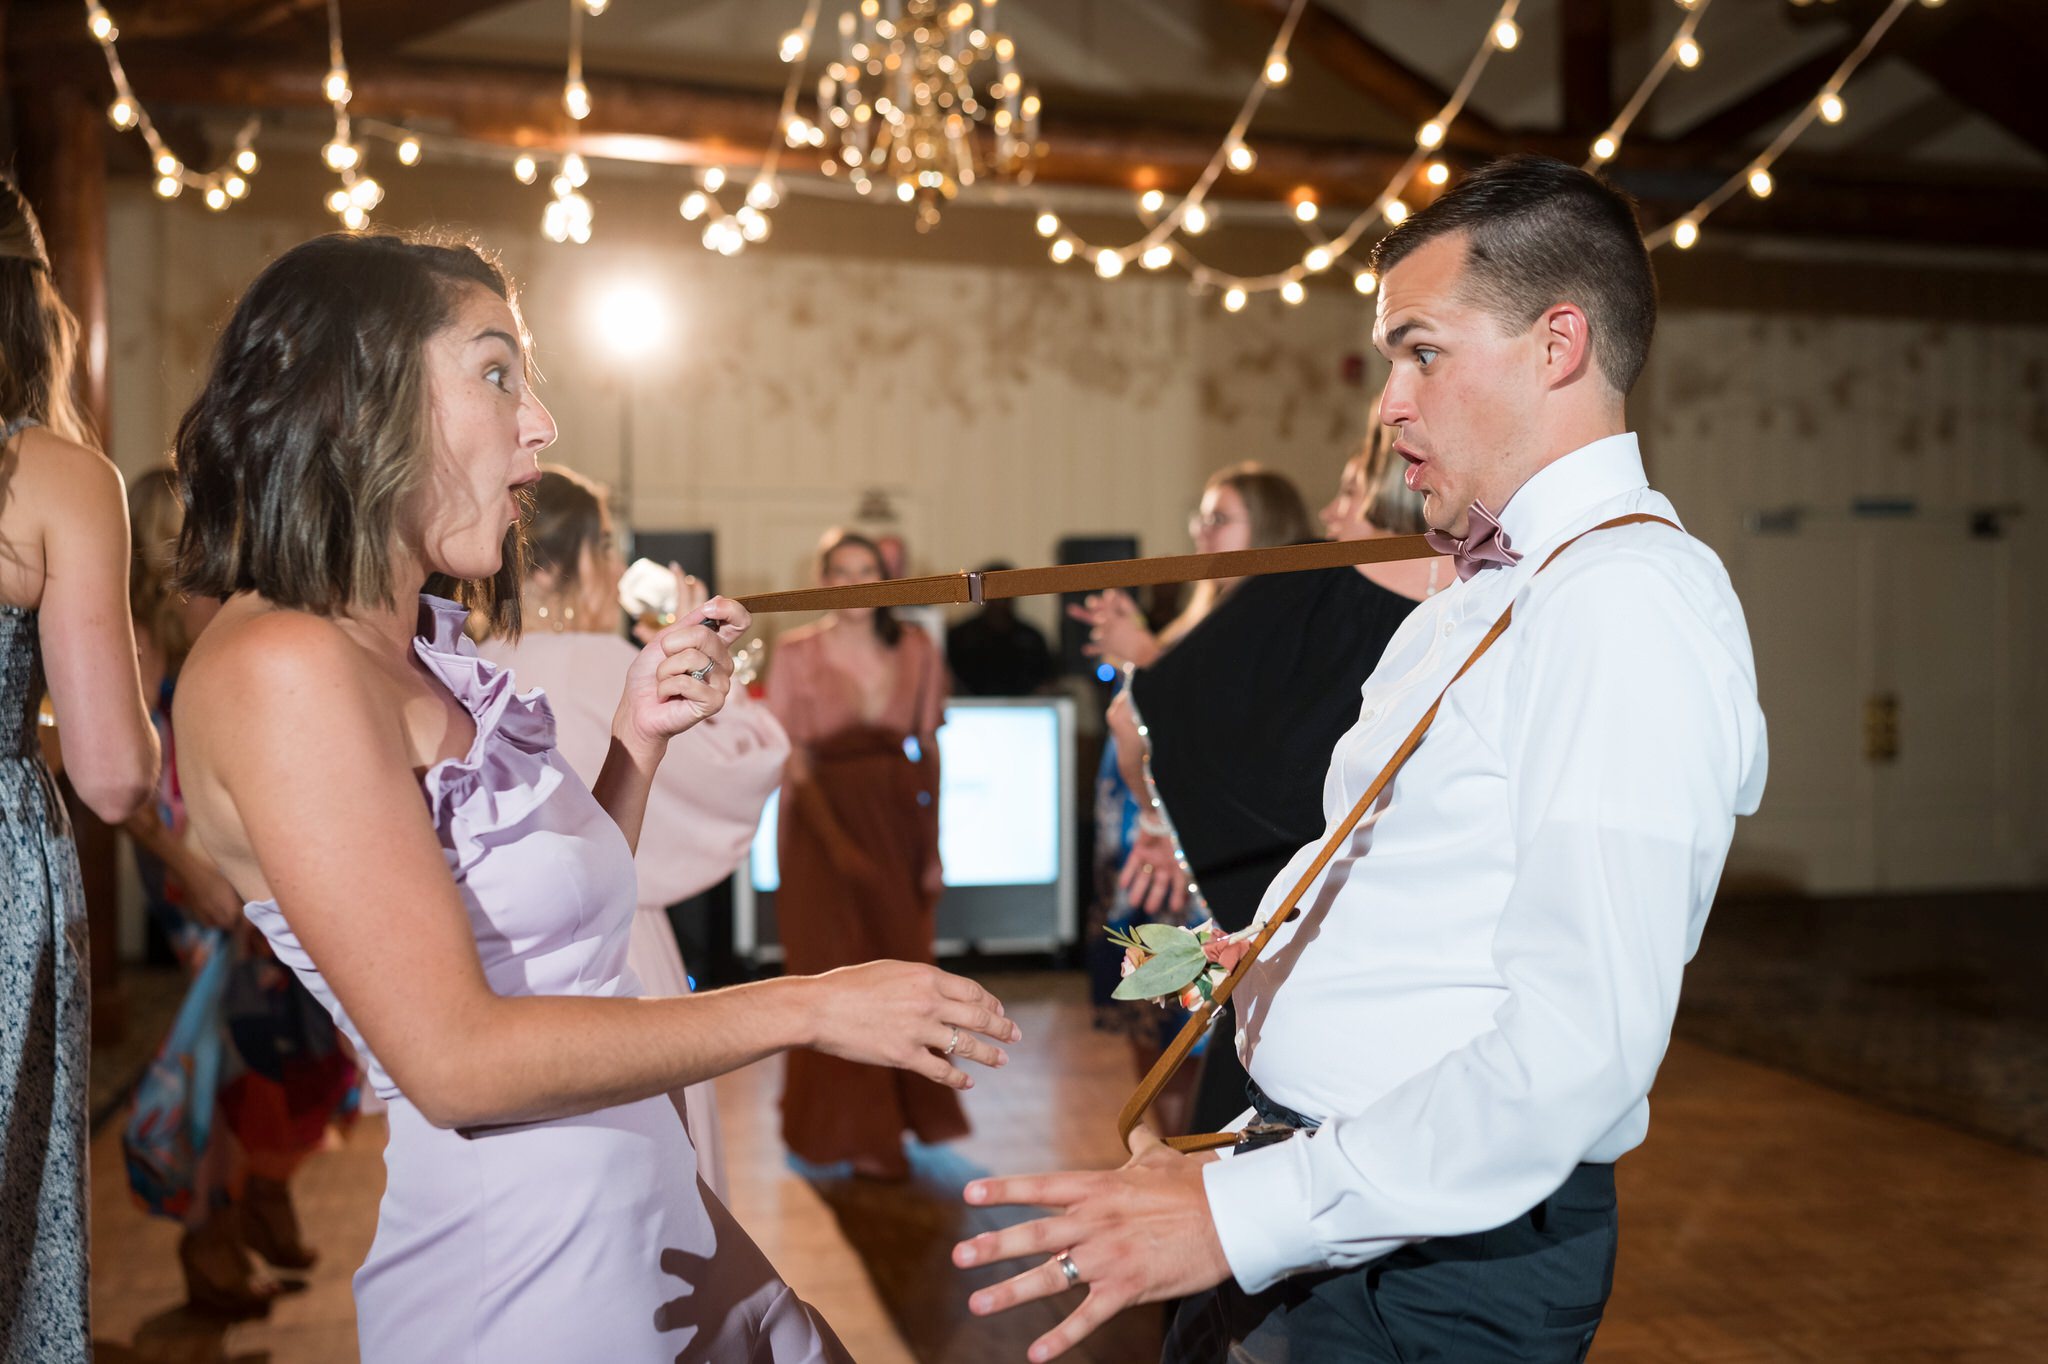 Dancing guests break a groomsman suspender  and look surprised.  